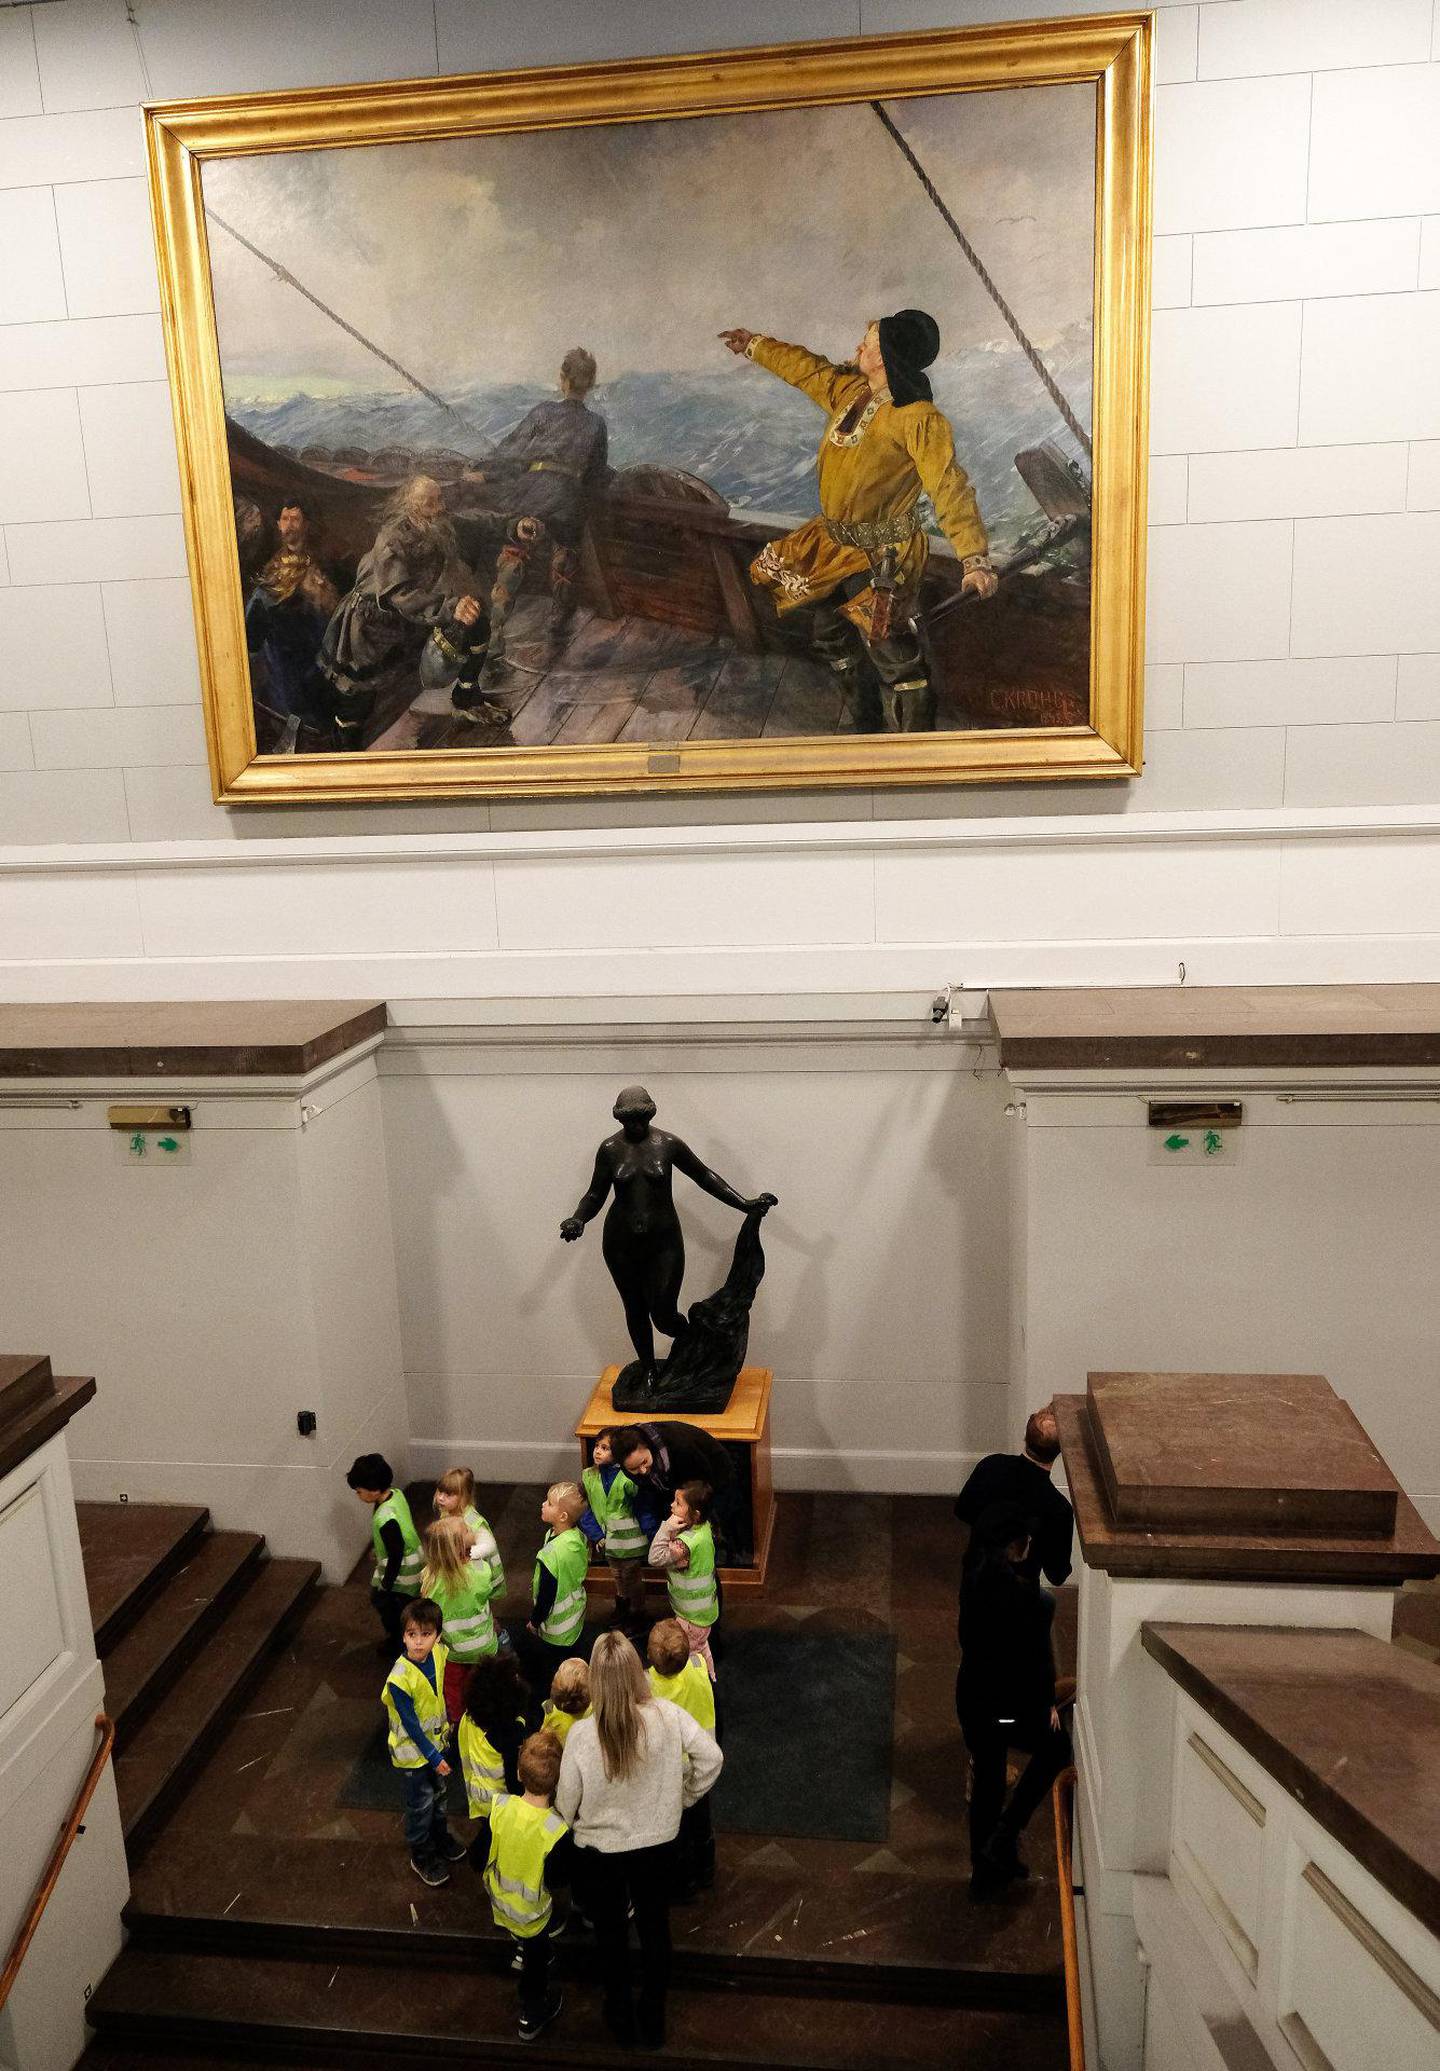 Denne helgen stenger Nasjonalgalleriet i Oslo dø rene for godt. Nasjonalmuseets samling blir ikke å se igjen før nybygget åpner på Vestbanen en gang i 2020. ALLE FOTO: MODE STEINKJER